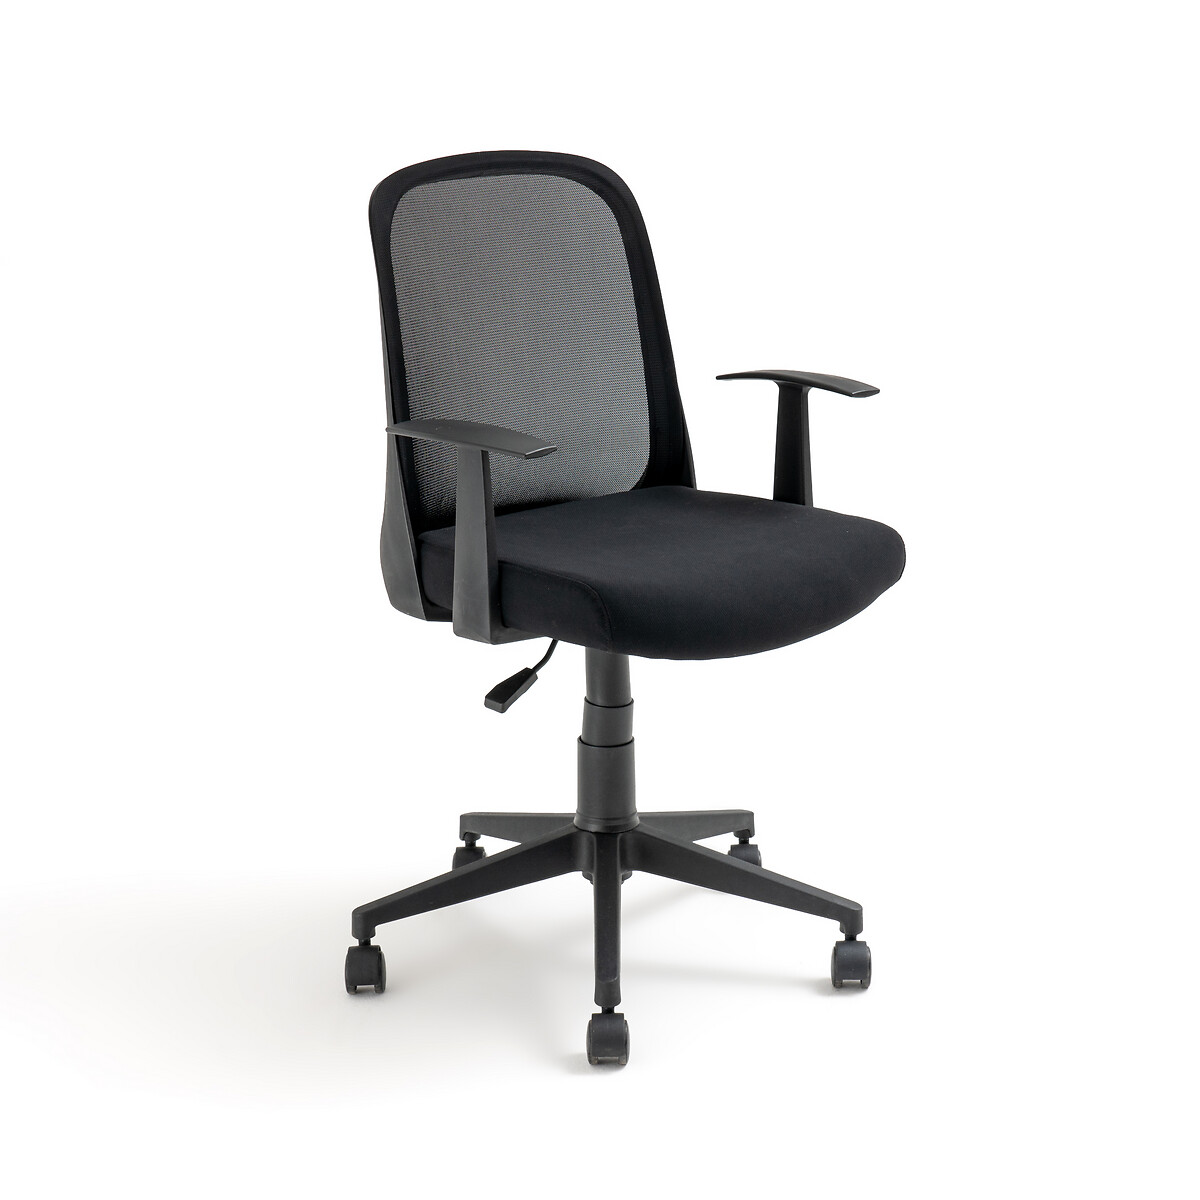 Стул офисный вращающийся Azzo единый размер черный офисный стул bestera большой и высокий офисный стул офисный стул руководителя с подставкой для ног эргономичный офисный стул